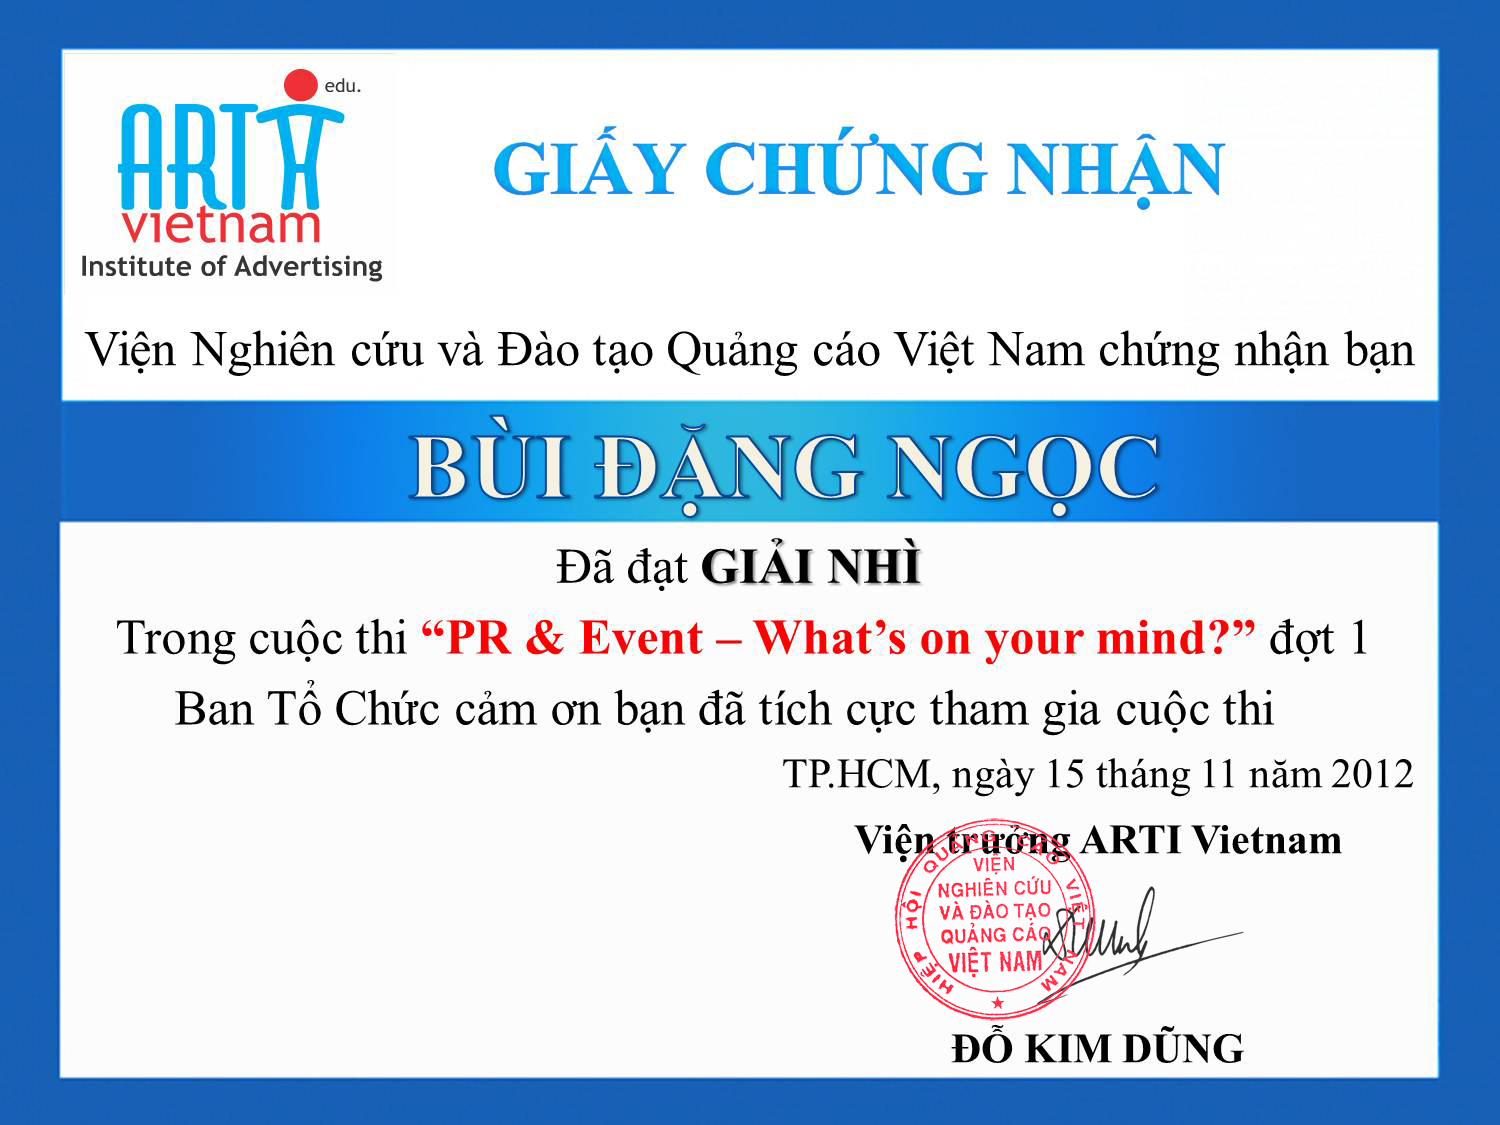 Description: ARTI Vietnam_Giai nhi_Bui Dang Ngoc